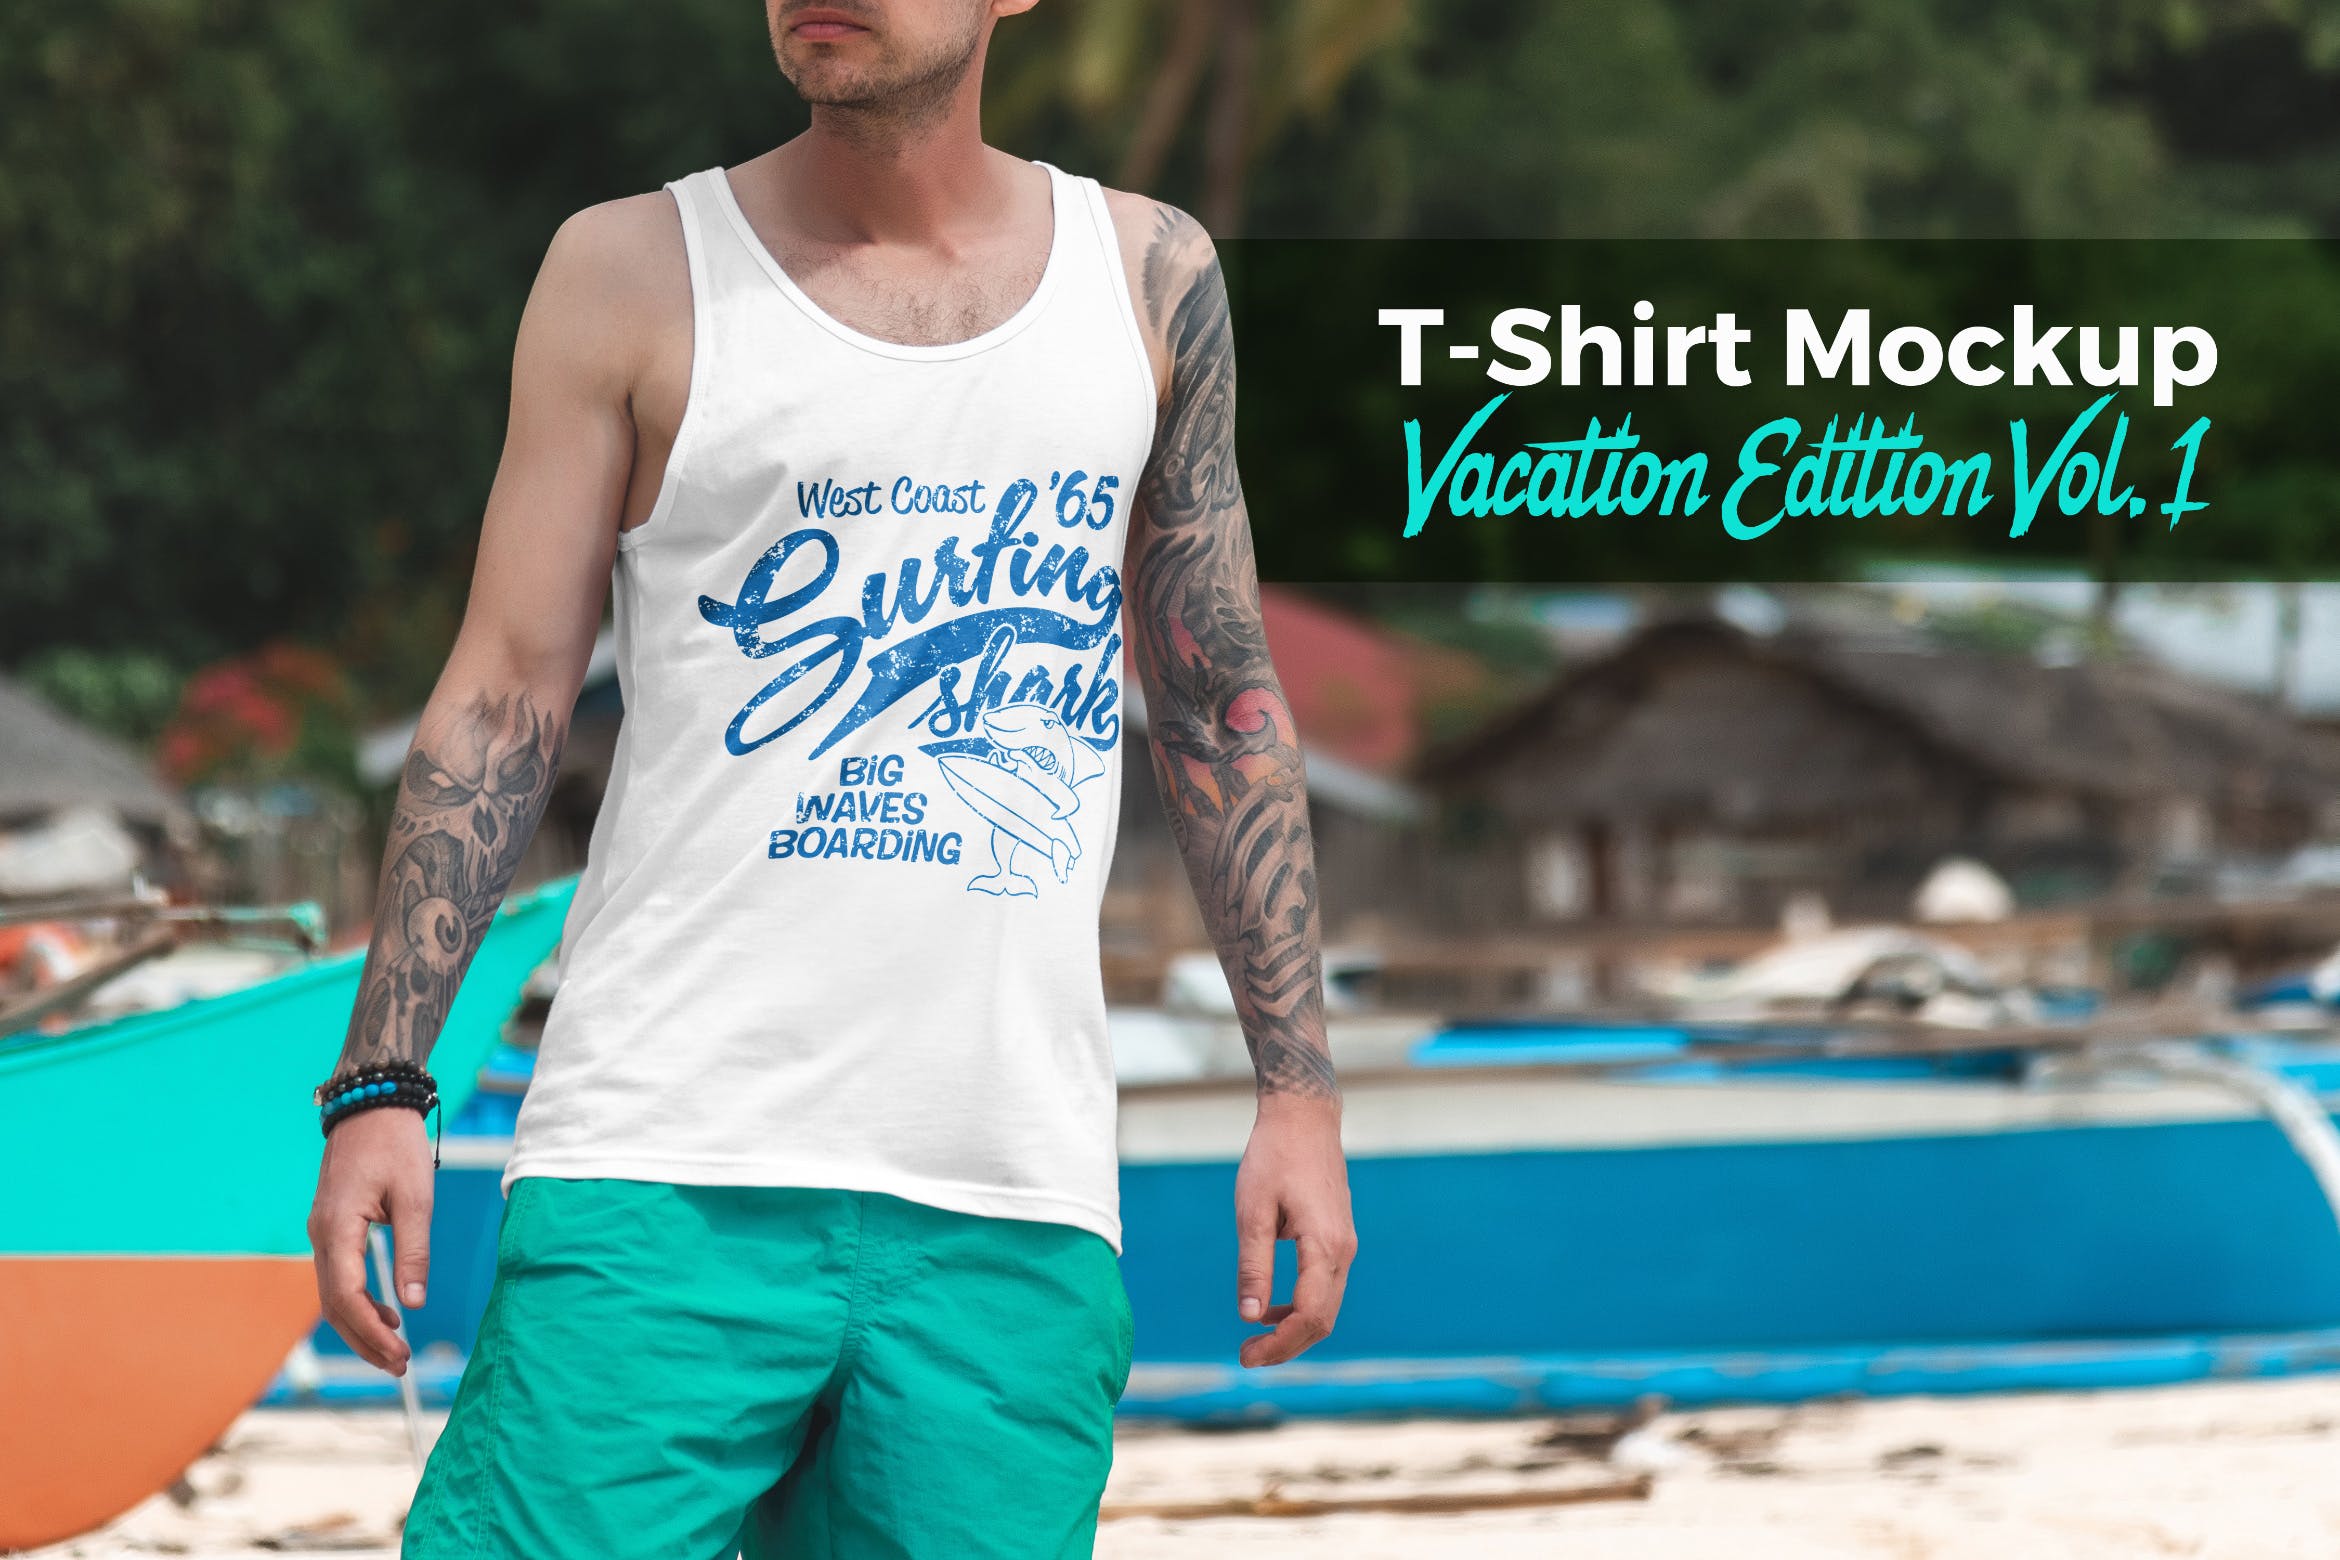 度假系列-休闲服装印花图案设计展示样机第一素材精选v1 T-Shirt Mockup Vacation Edition Vol. 1插图